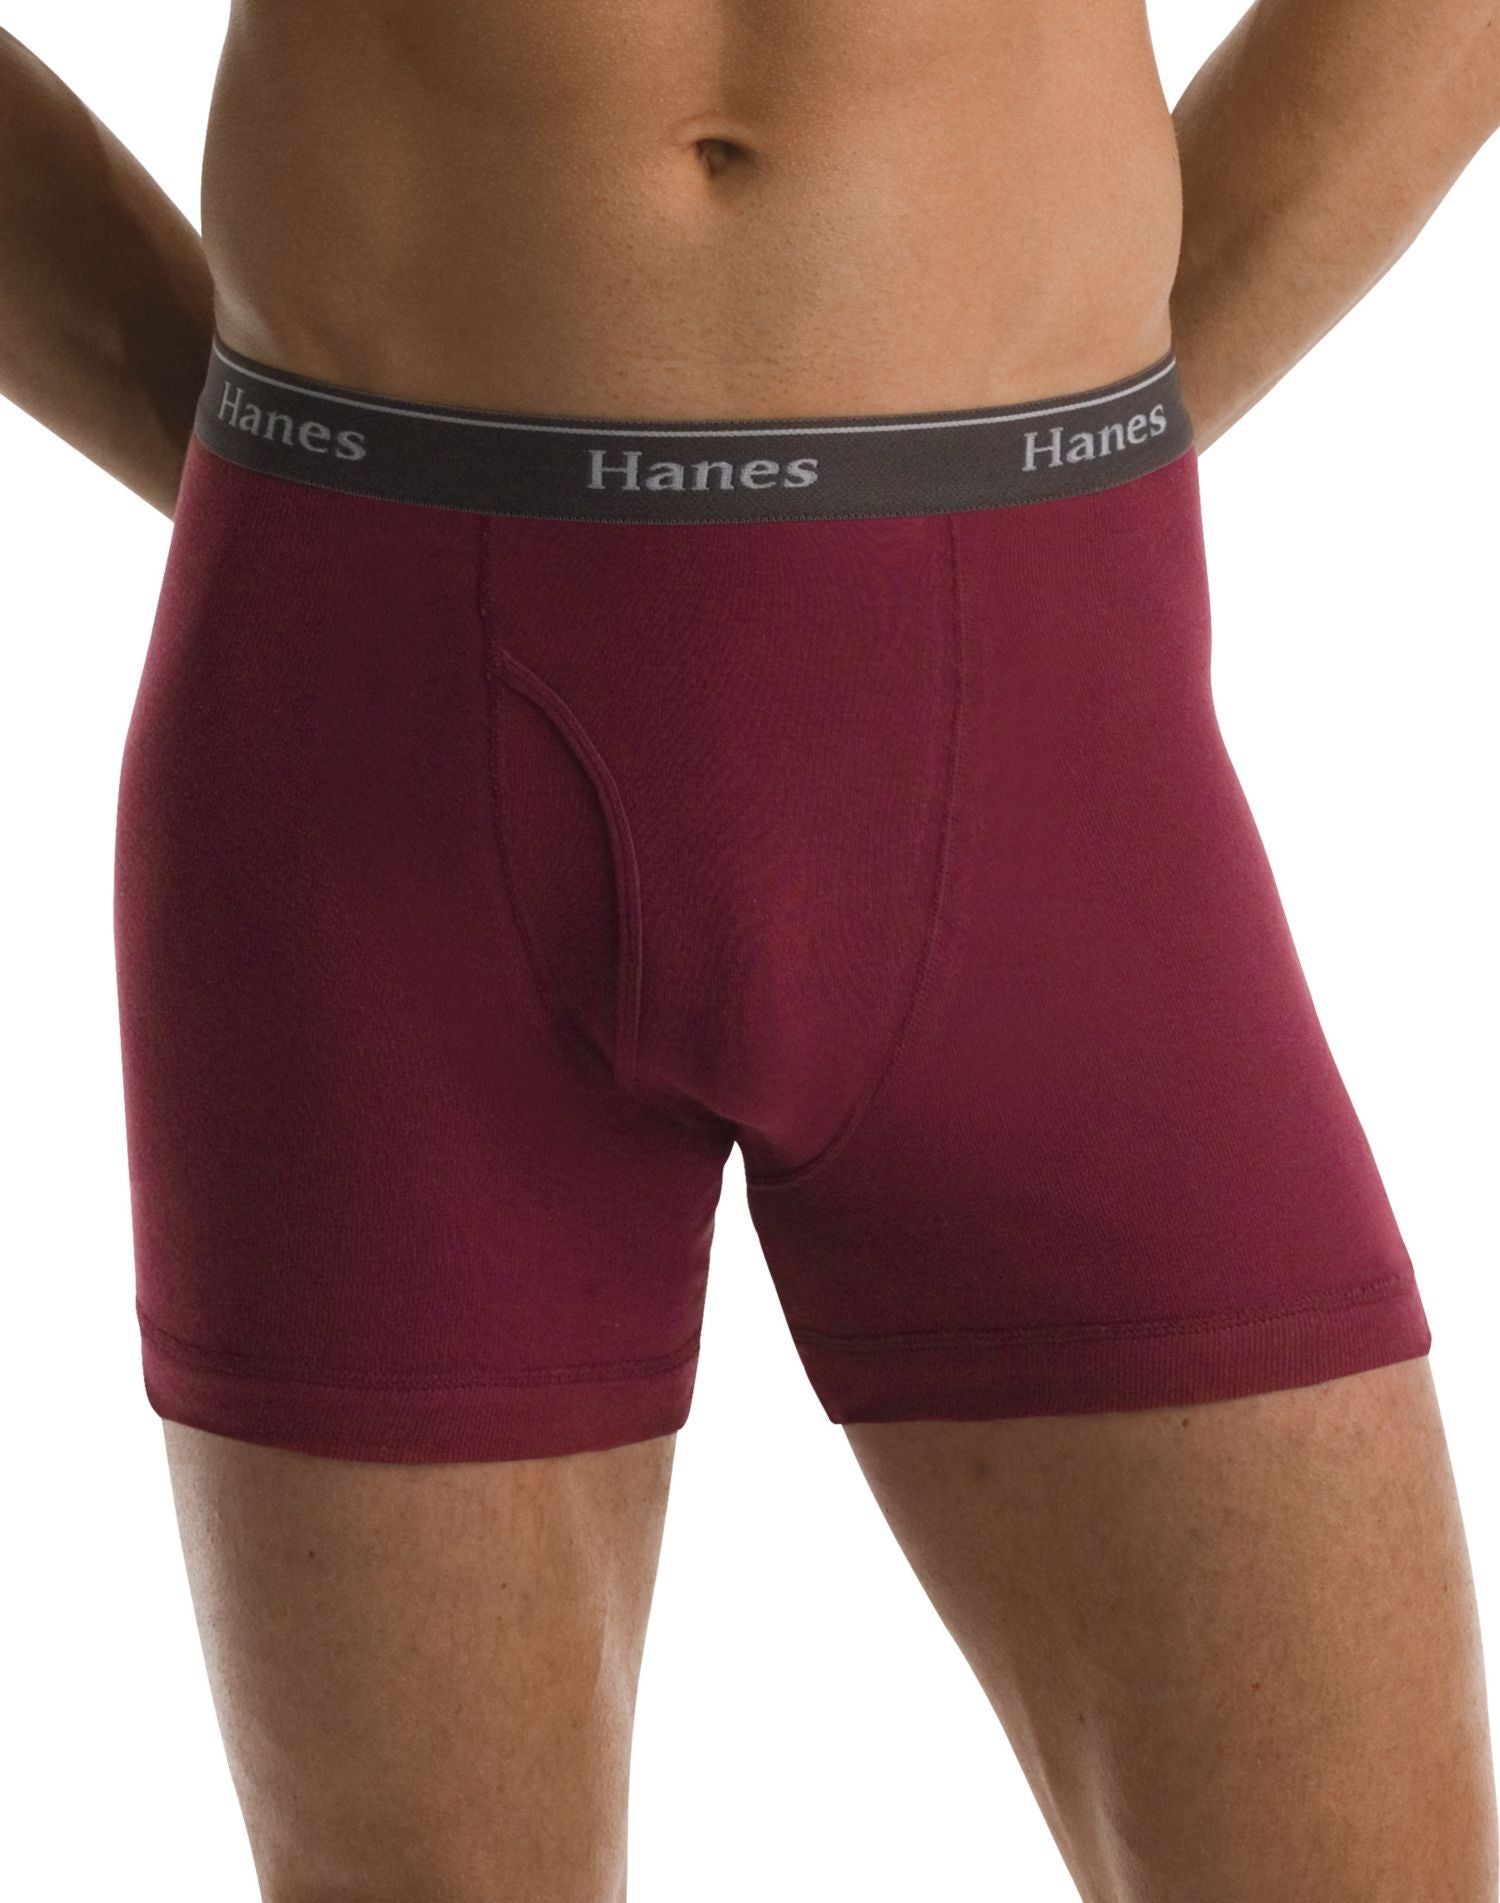 Hanes Men's Color Briefs Assorted Colors Tagless (Comfort Flex